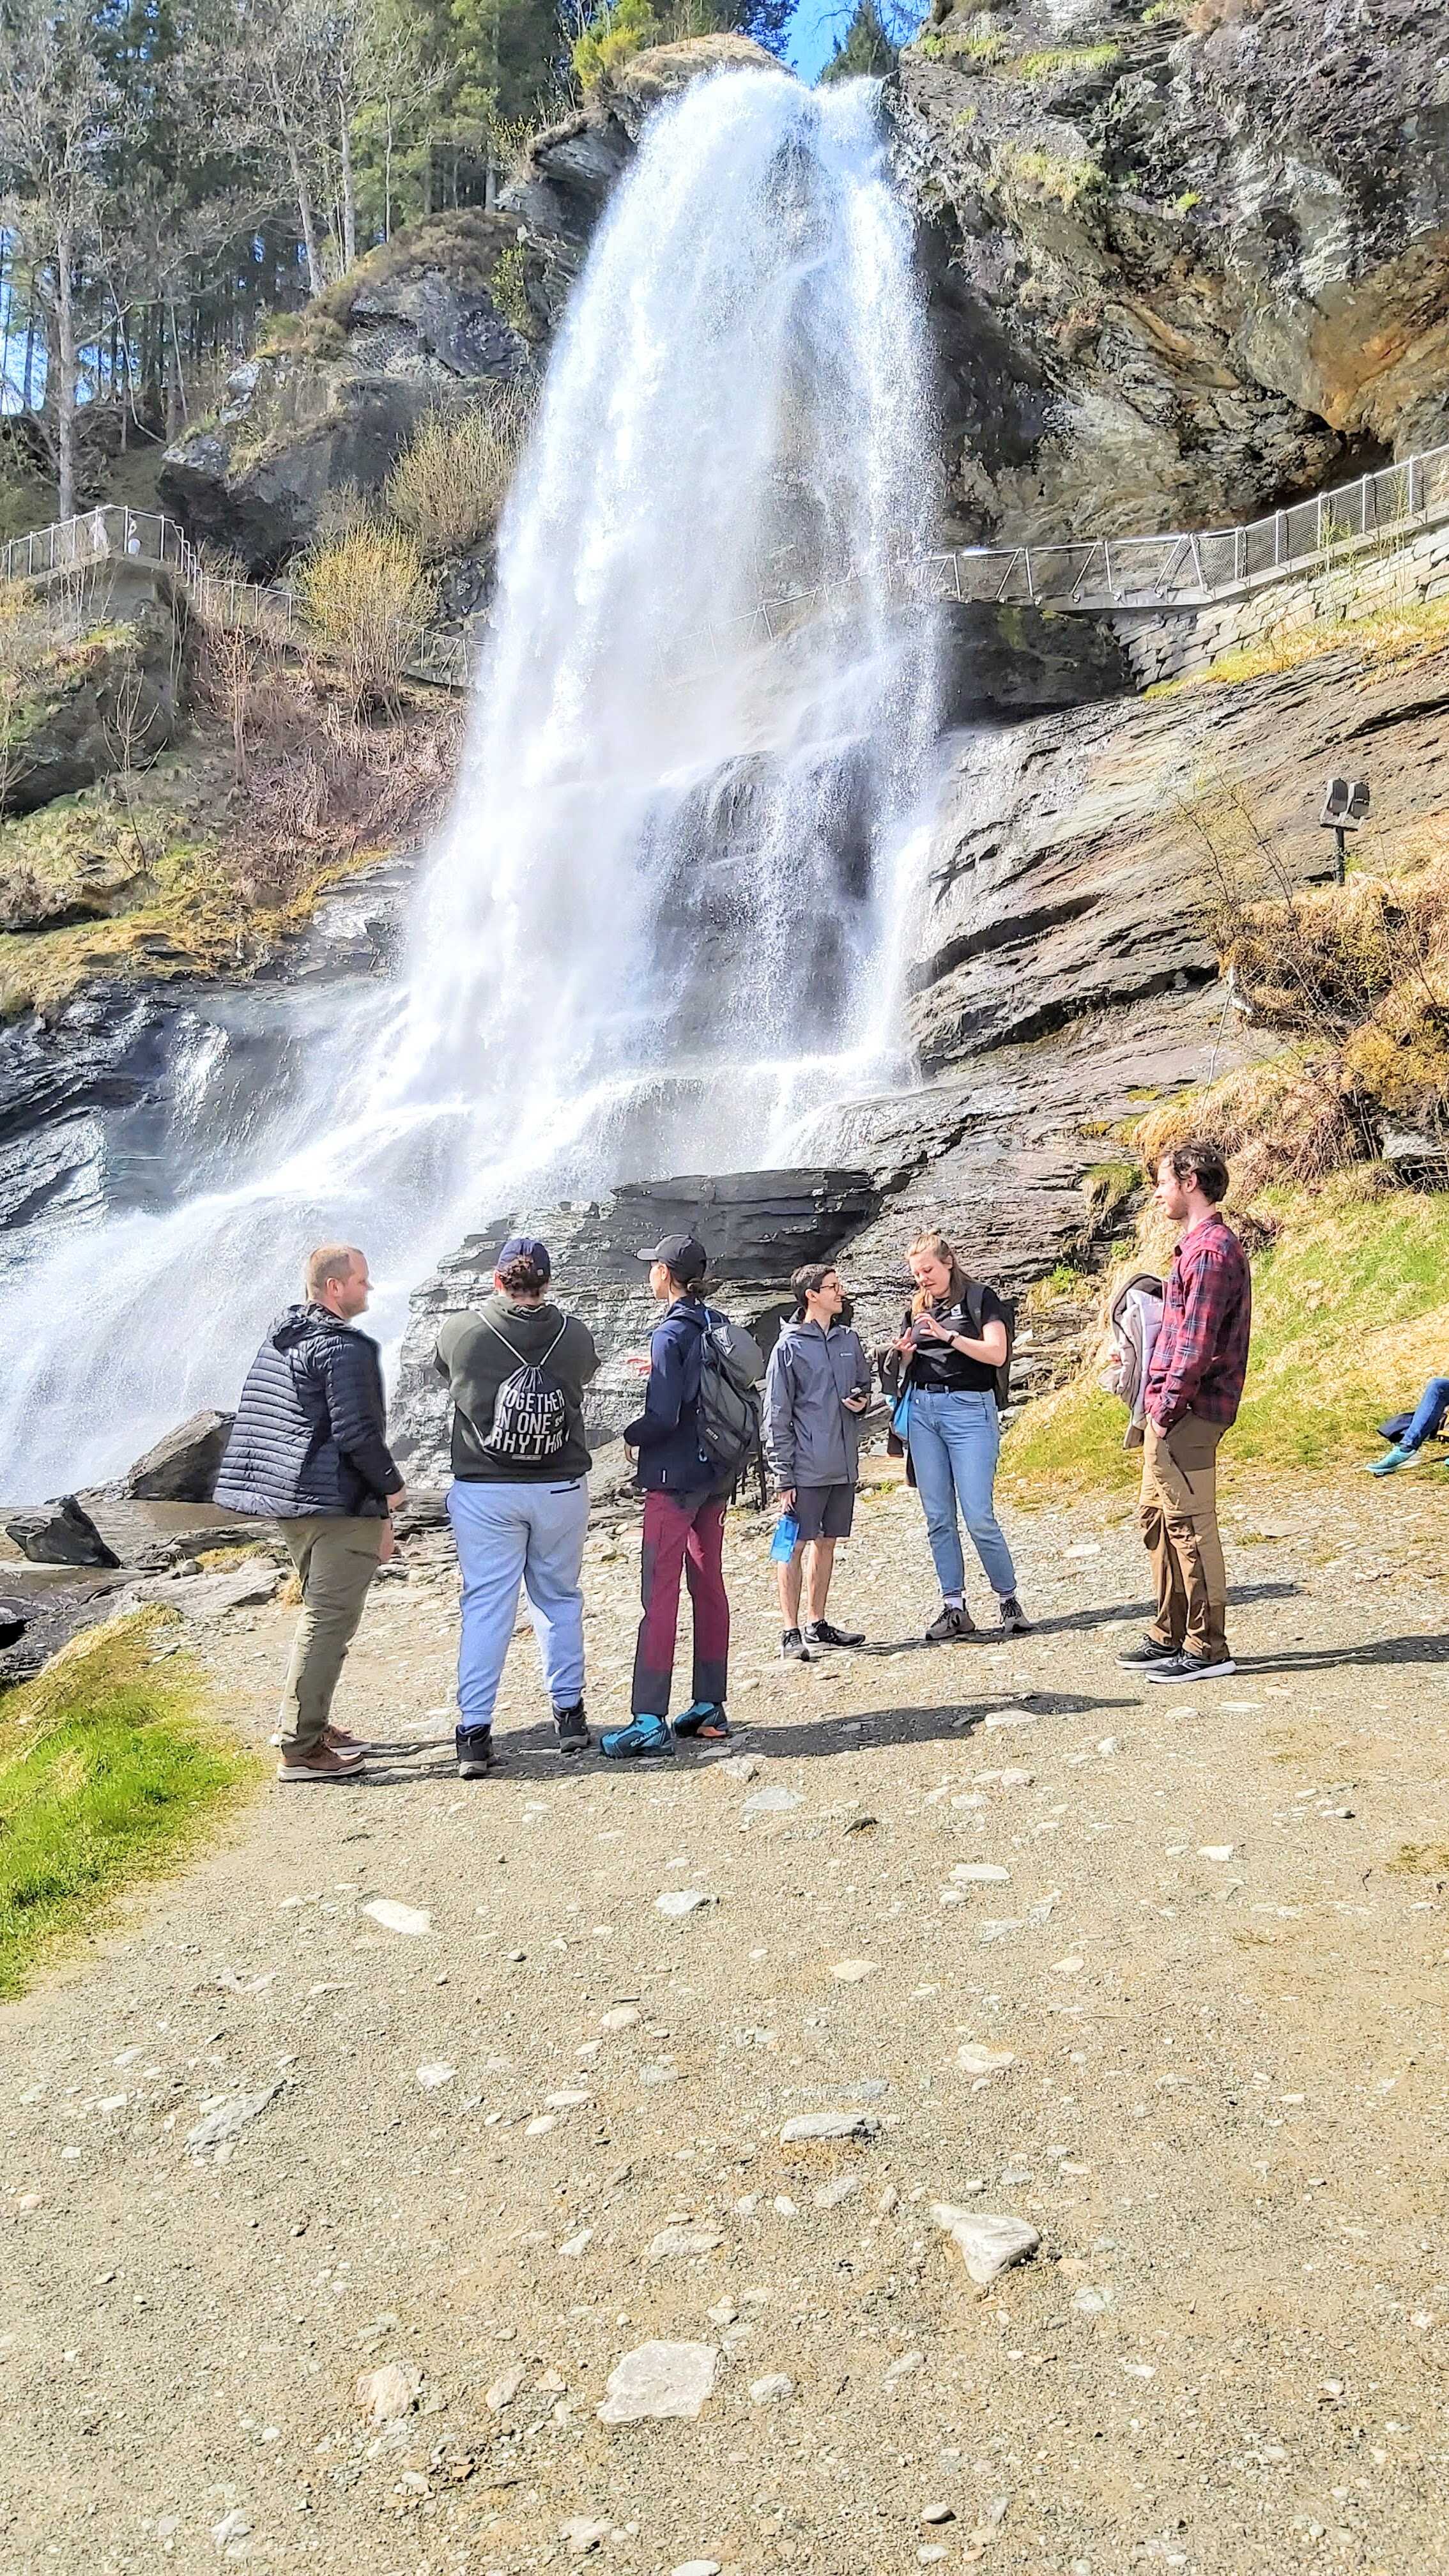 At the Steinsdalsfossen waterfall